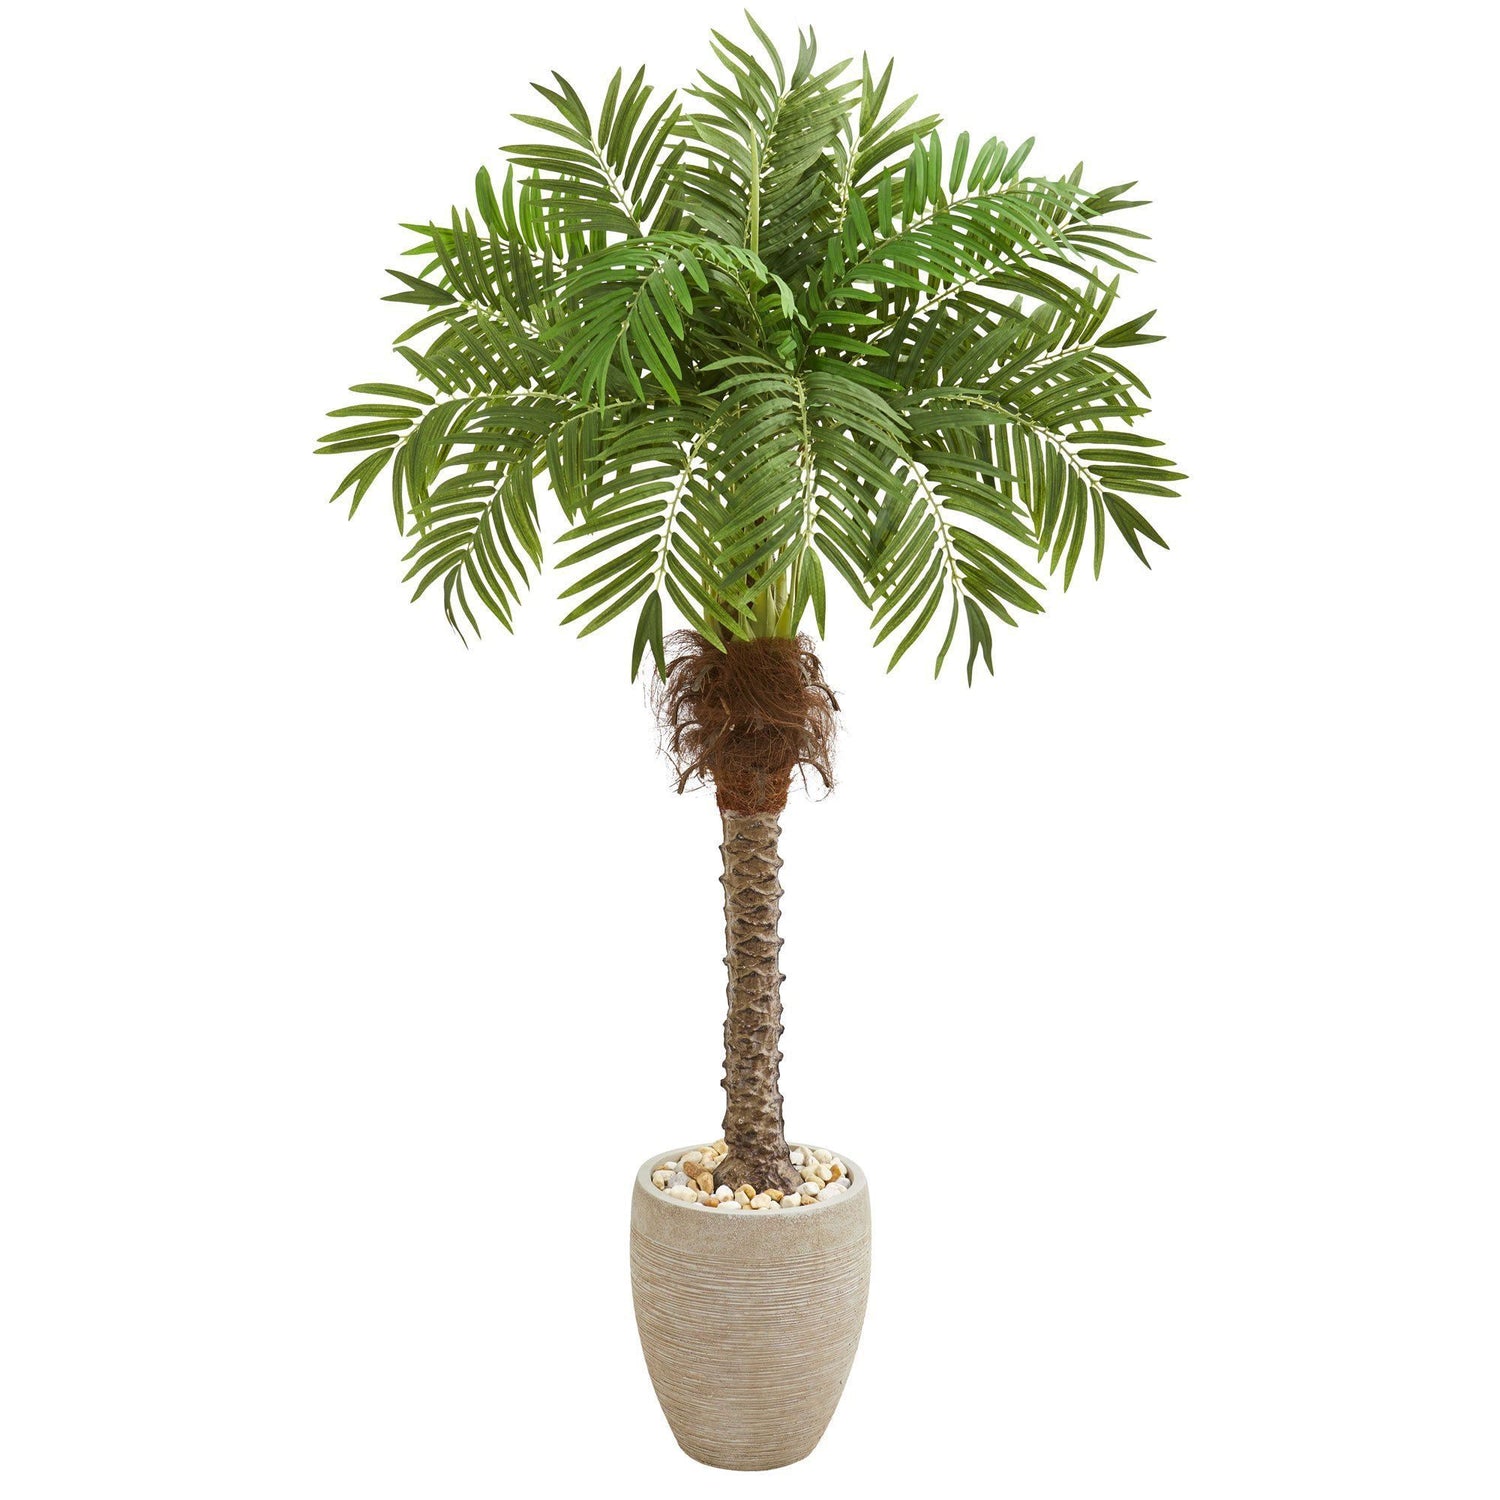 63” Robellini Palm Artificial Tree in Sandstone Planter